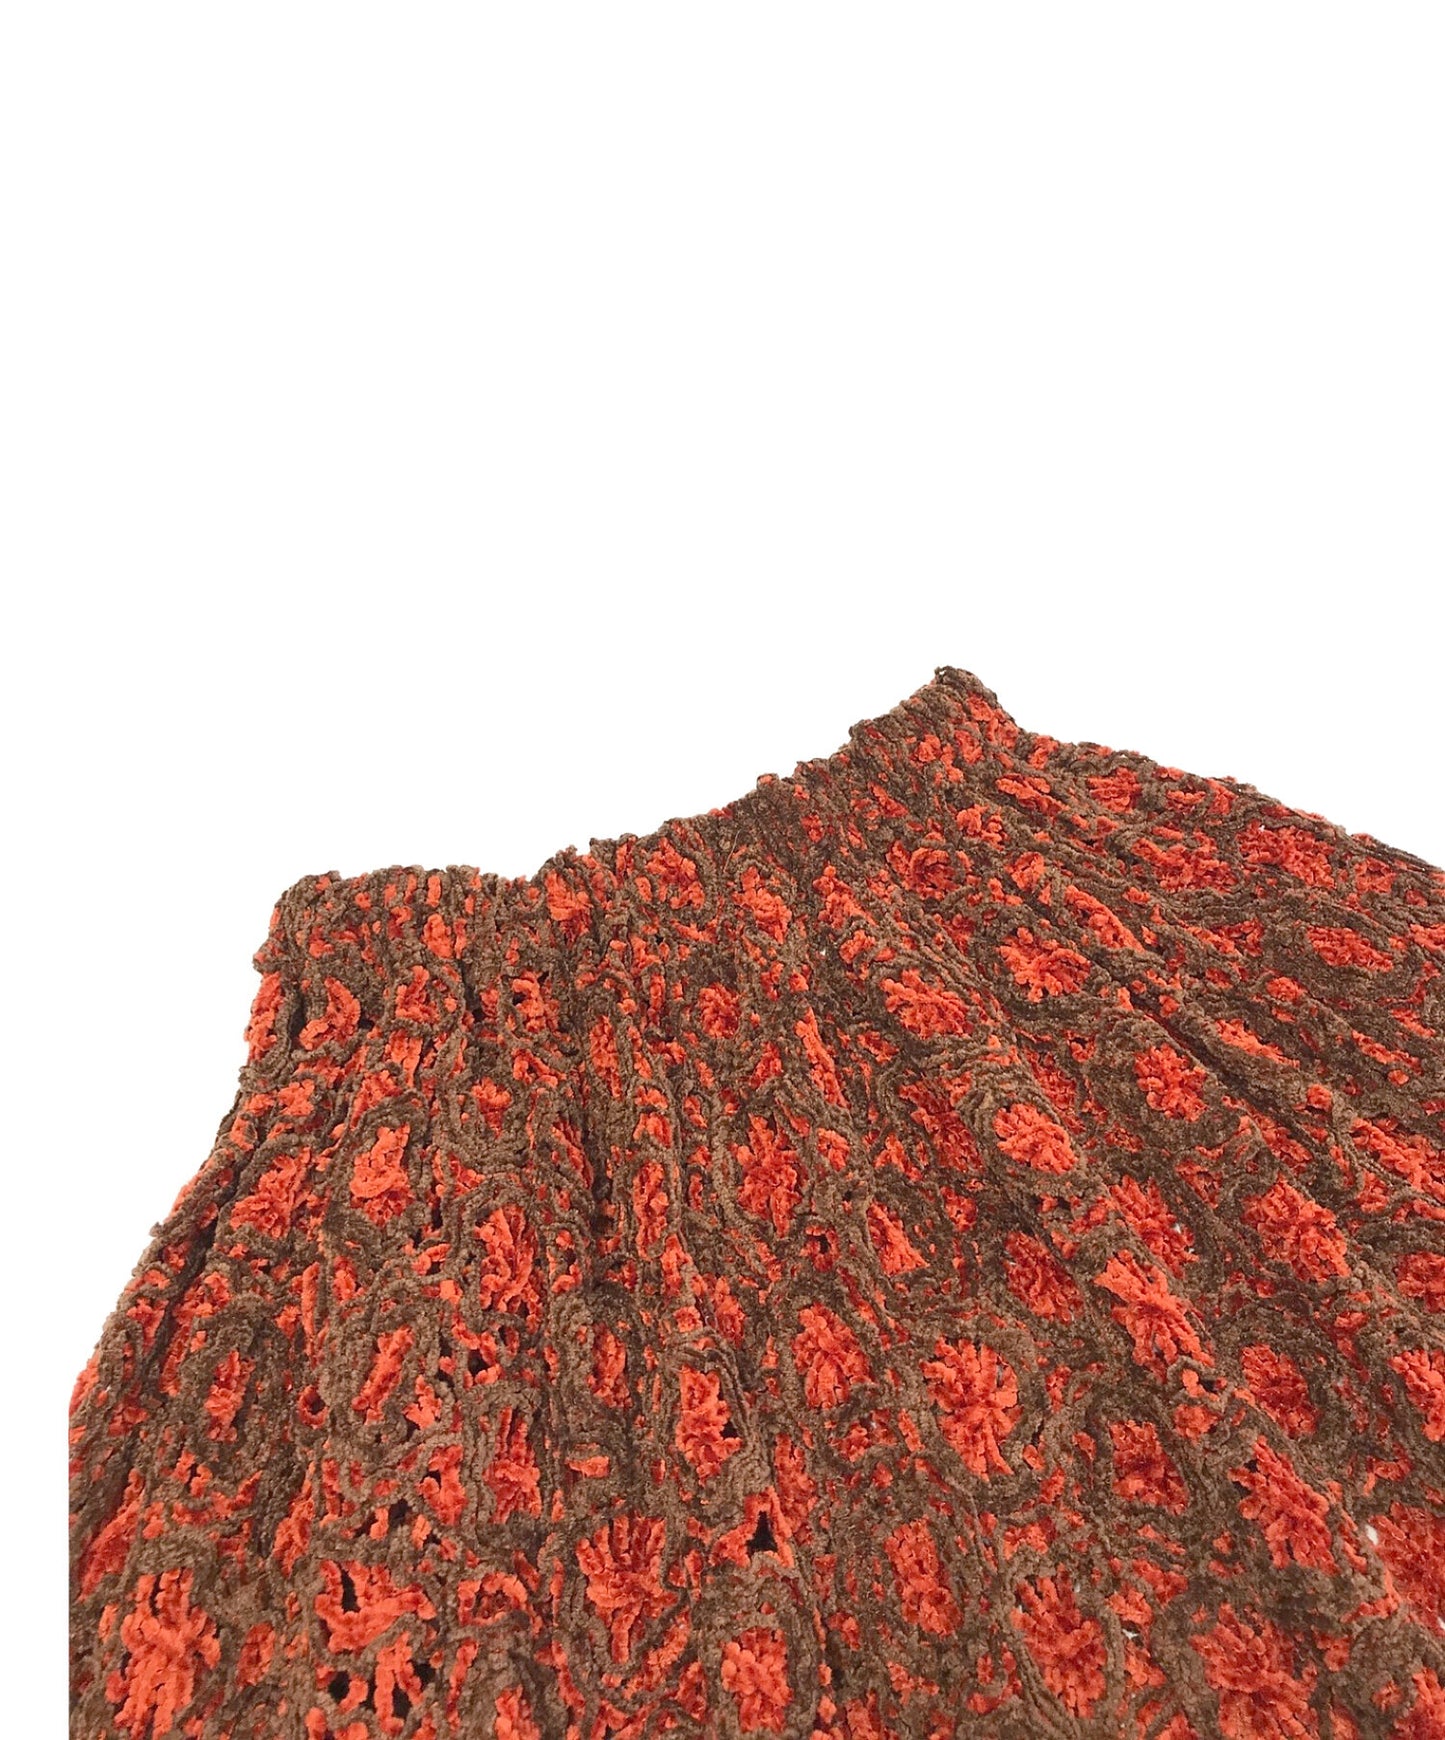 Comme des Garcons [Old] Mole Knit Lace-Knit Skirt KX-912070